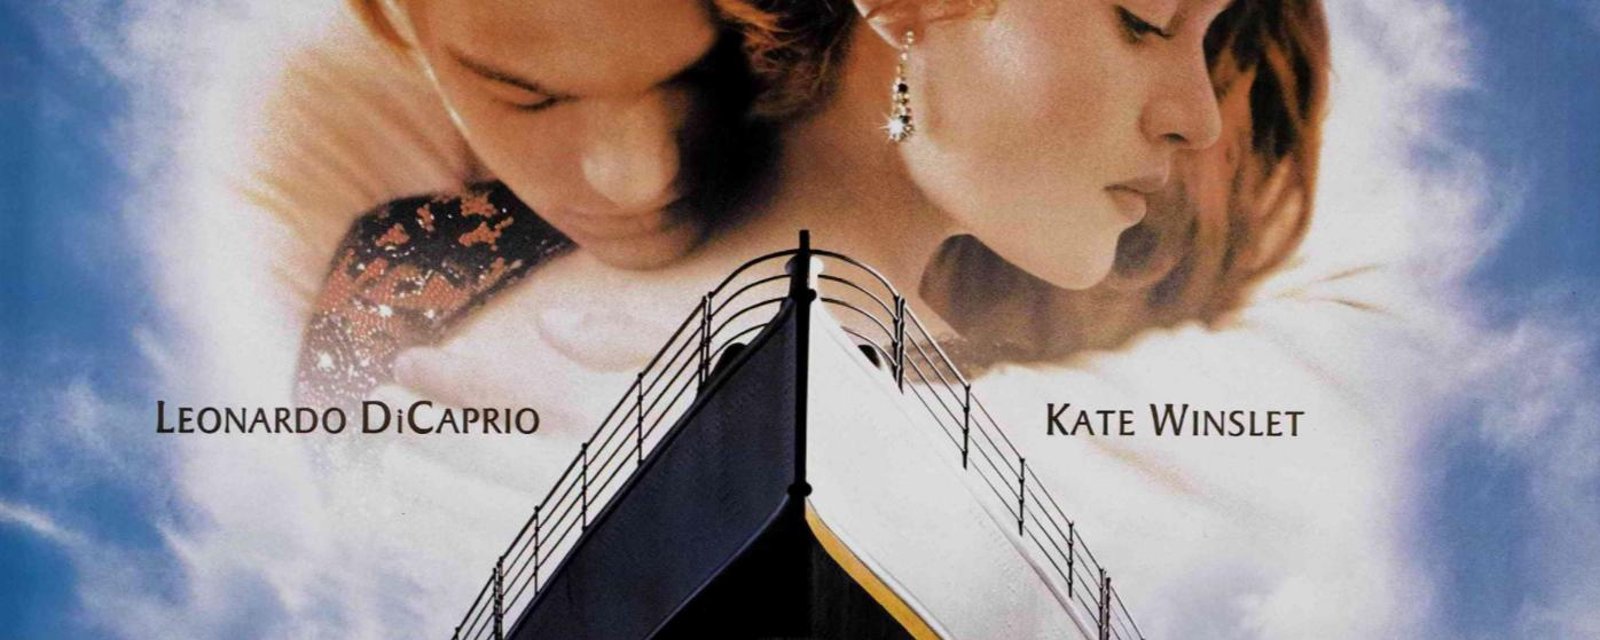 Un célèbre acteur du film Titanic est décédé...